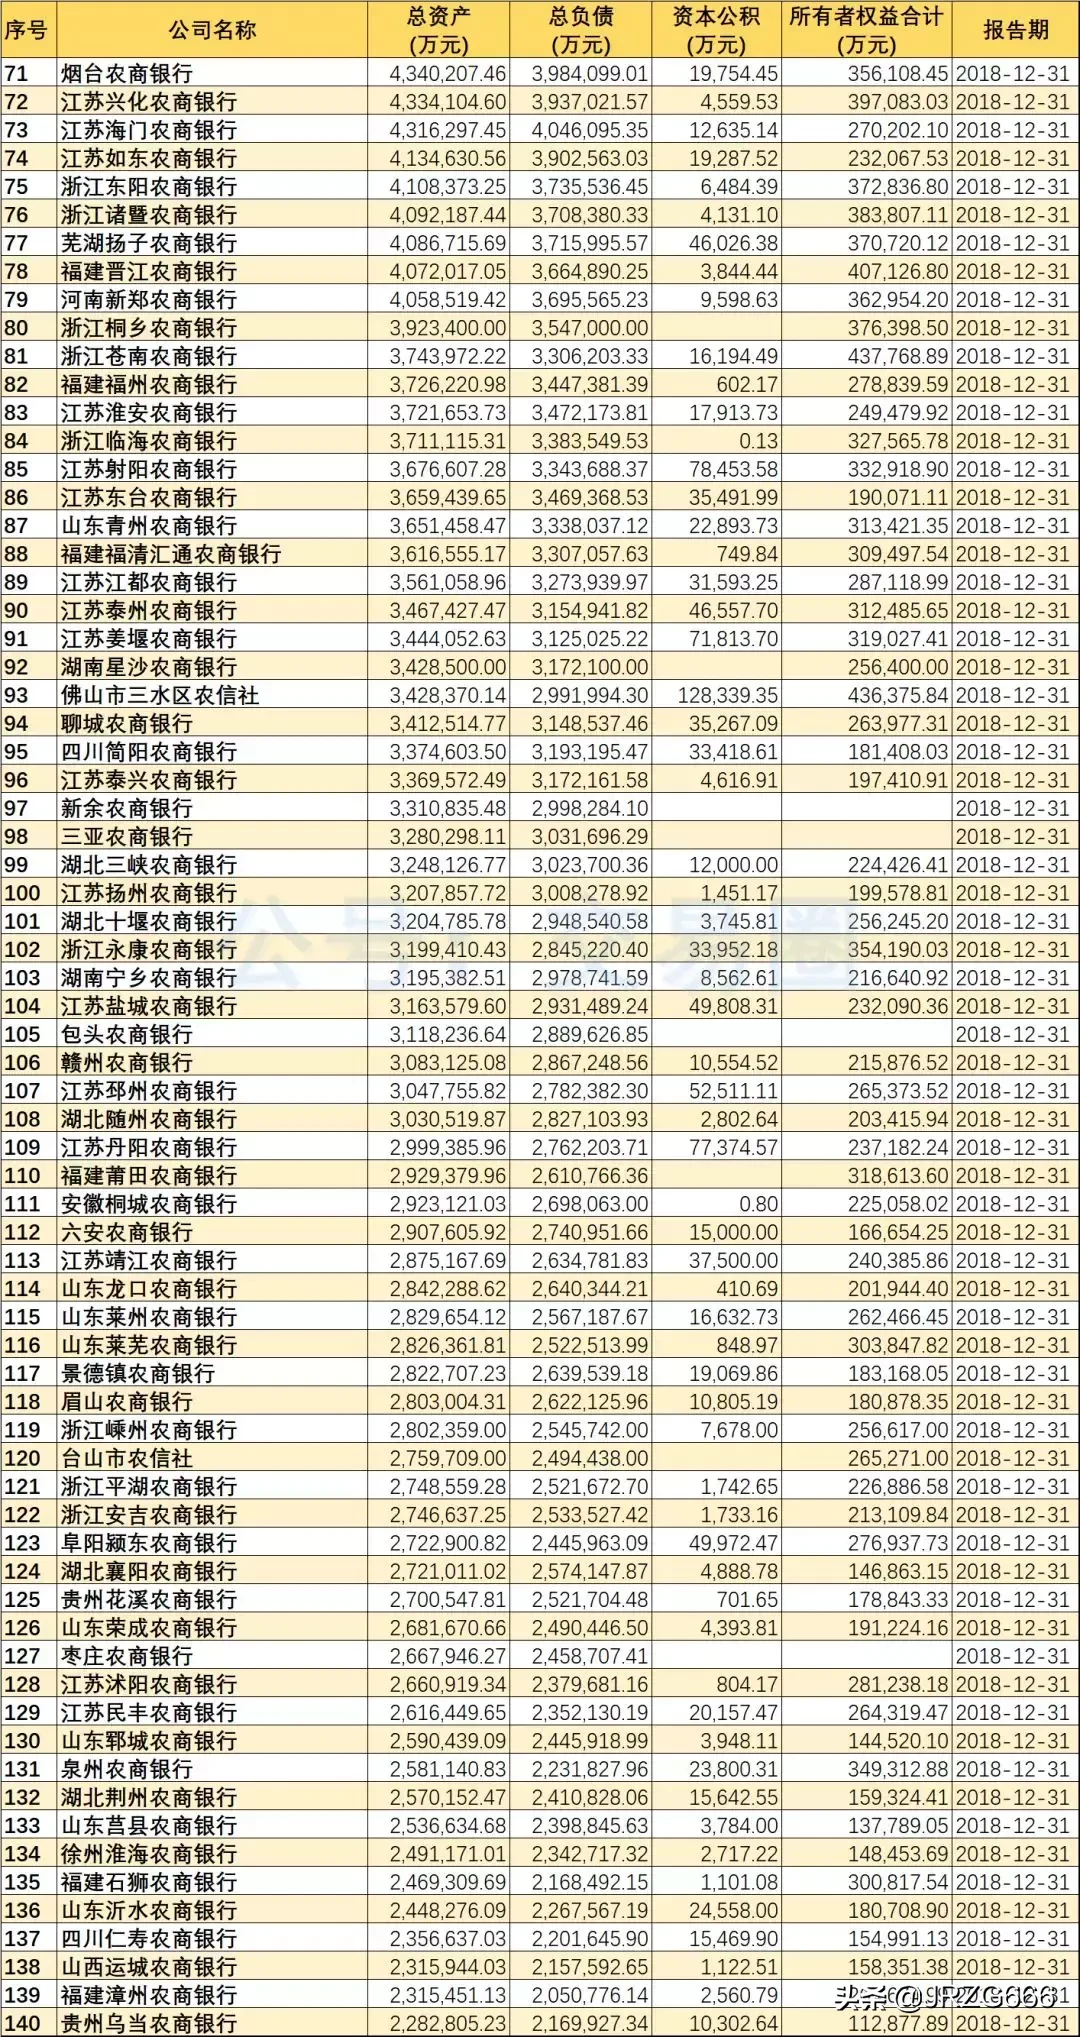 2018年488家银行资产规模排名 | 附城农商行分类排名